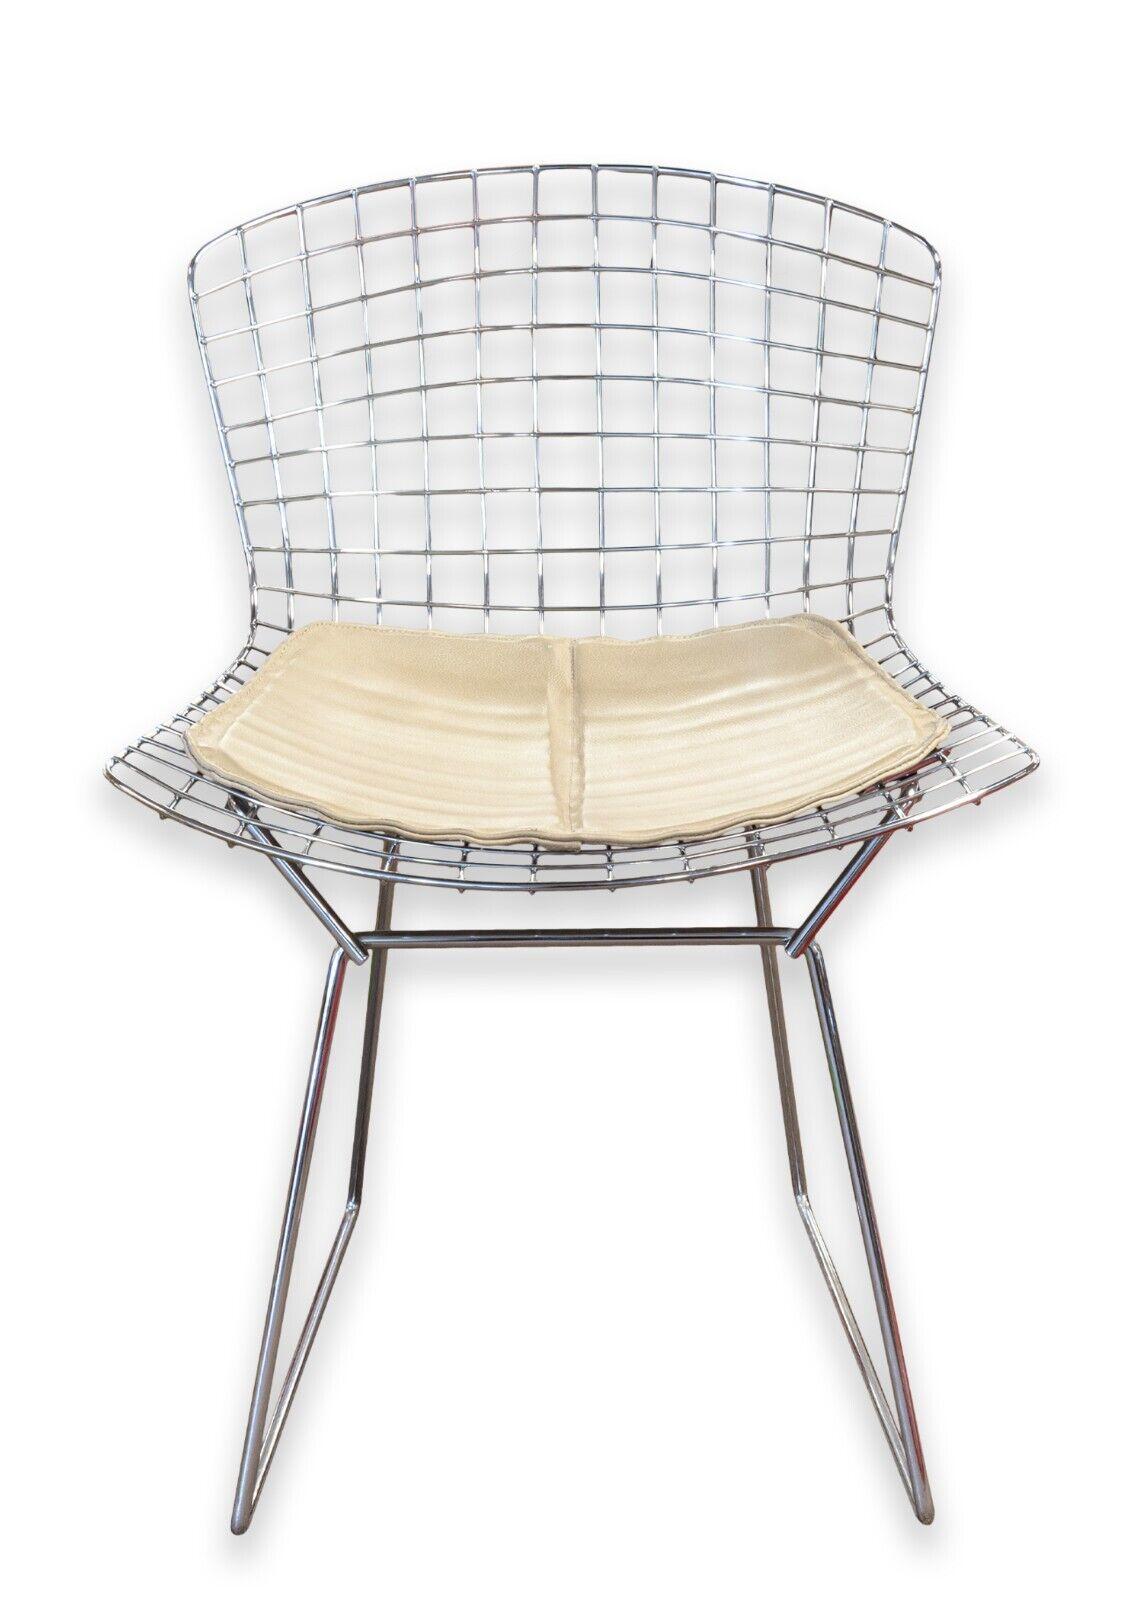 Ein Satz von 6 Harry Bertoia für Knoll Draht Beistellstühle. Ein wundervolles Set aus sauberen, schicken Bertoia-Drahtstühlen mit hübschen beigen Lederpads, einer verchromten Drahtkonstruktion und einem zeitlosen Design aus der Mitte des